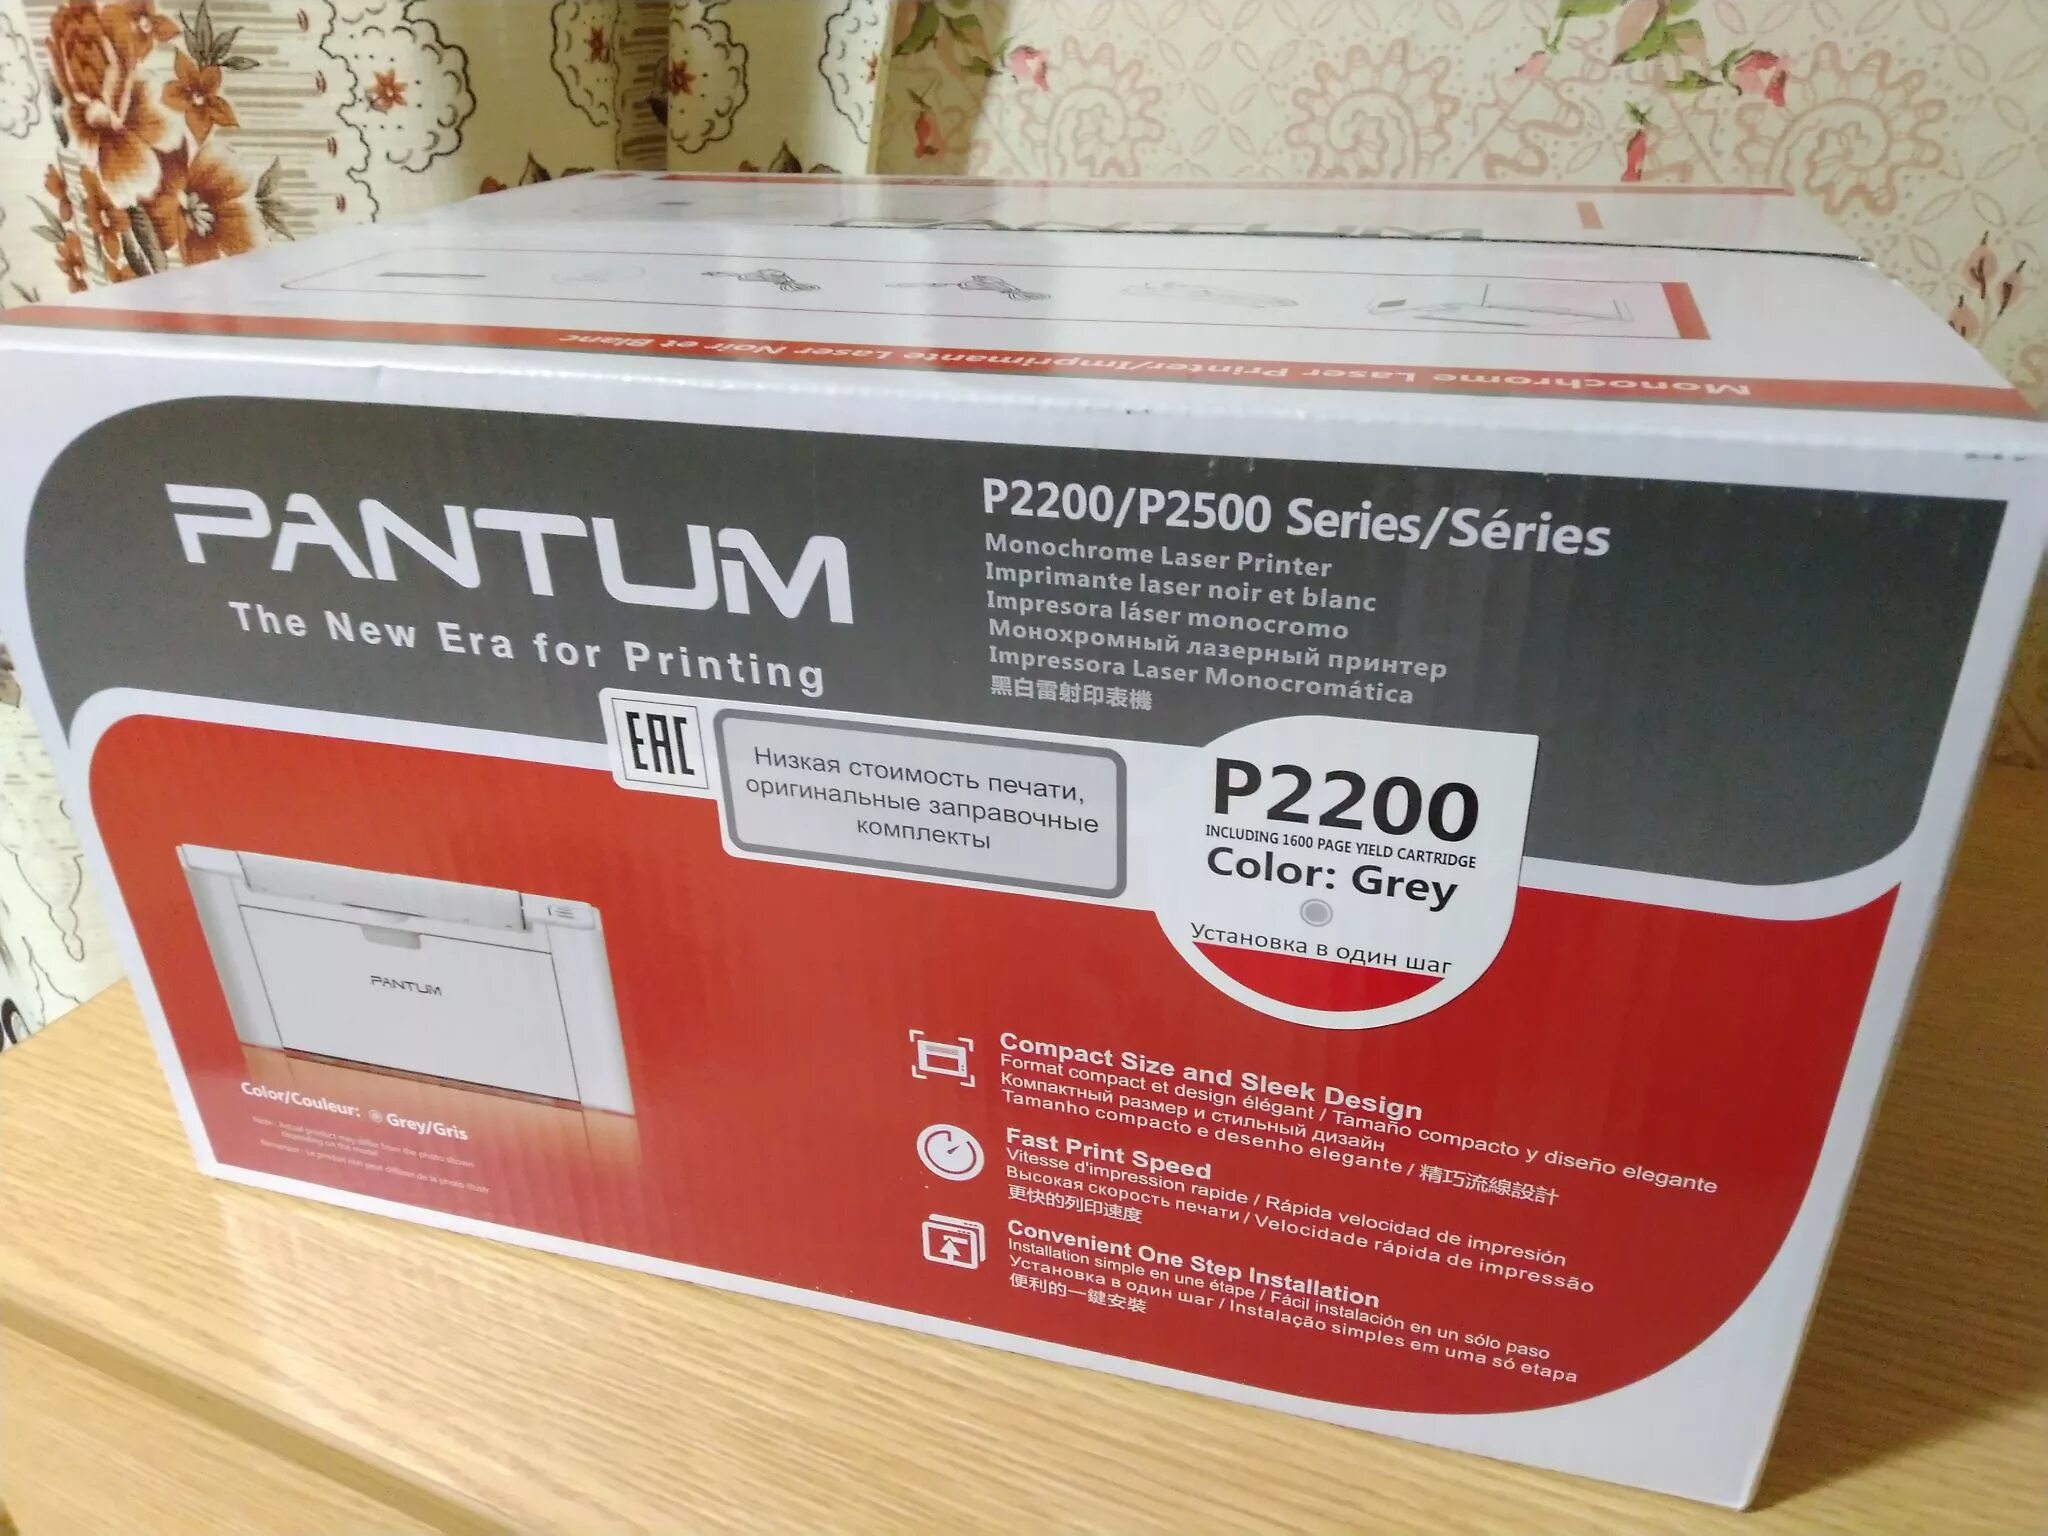 Принтер pantum p2200 series. Принтер Pantum p2516. Принтер лазерный Pantum p2200. Pantum принтер Pantum p2200. Картридж для принтера Pantum p2200.